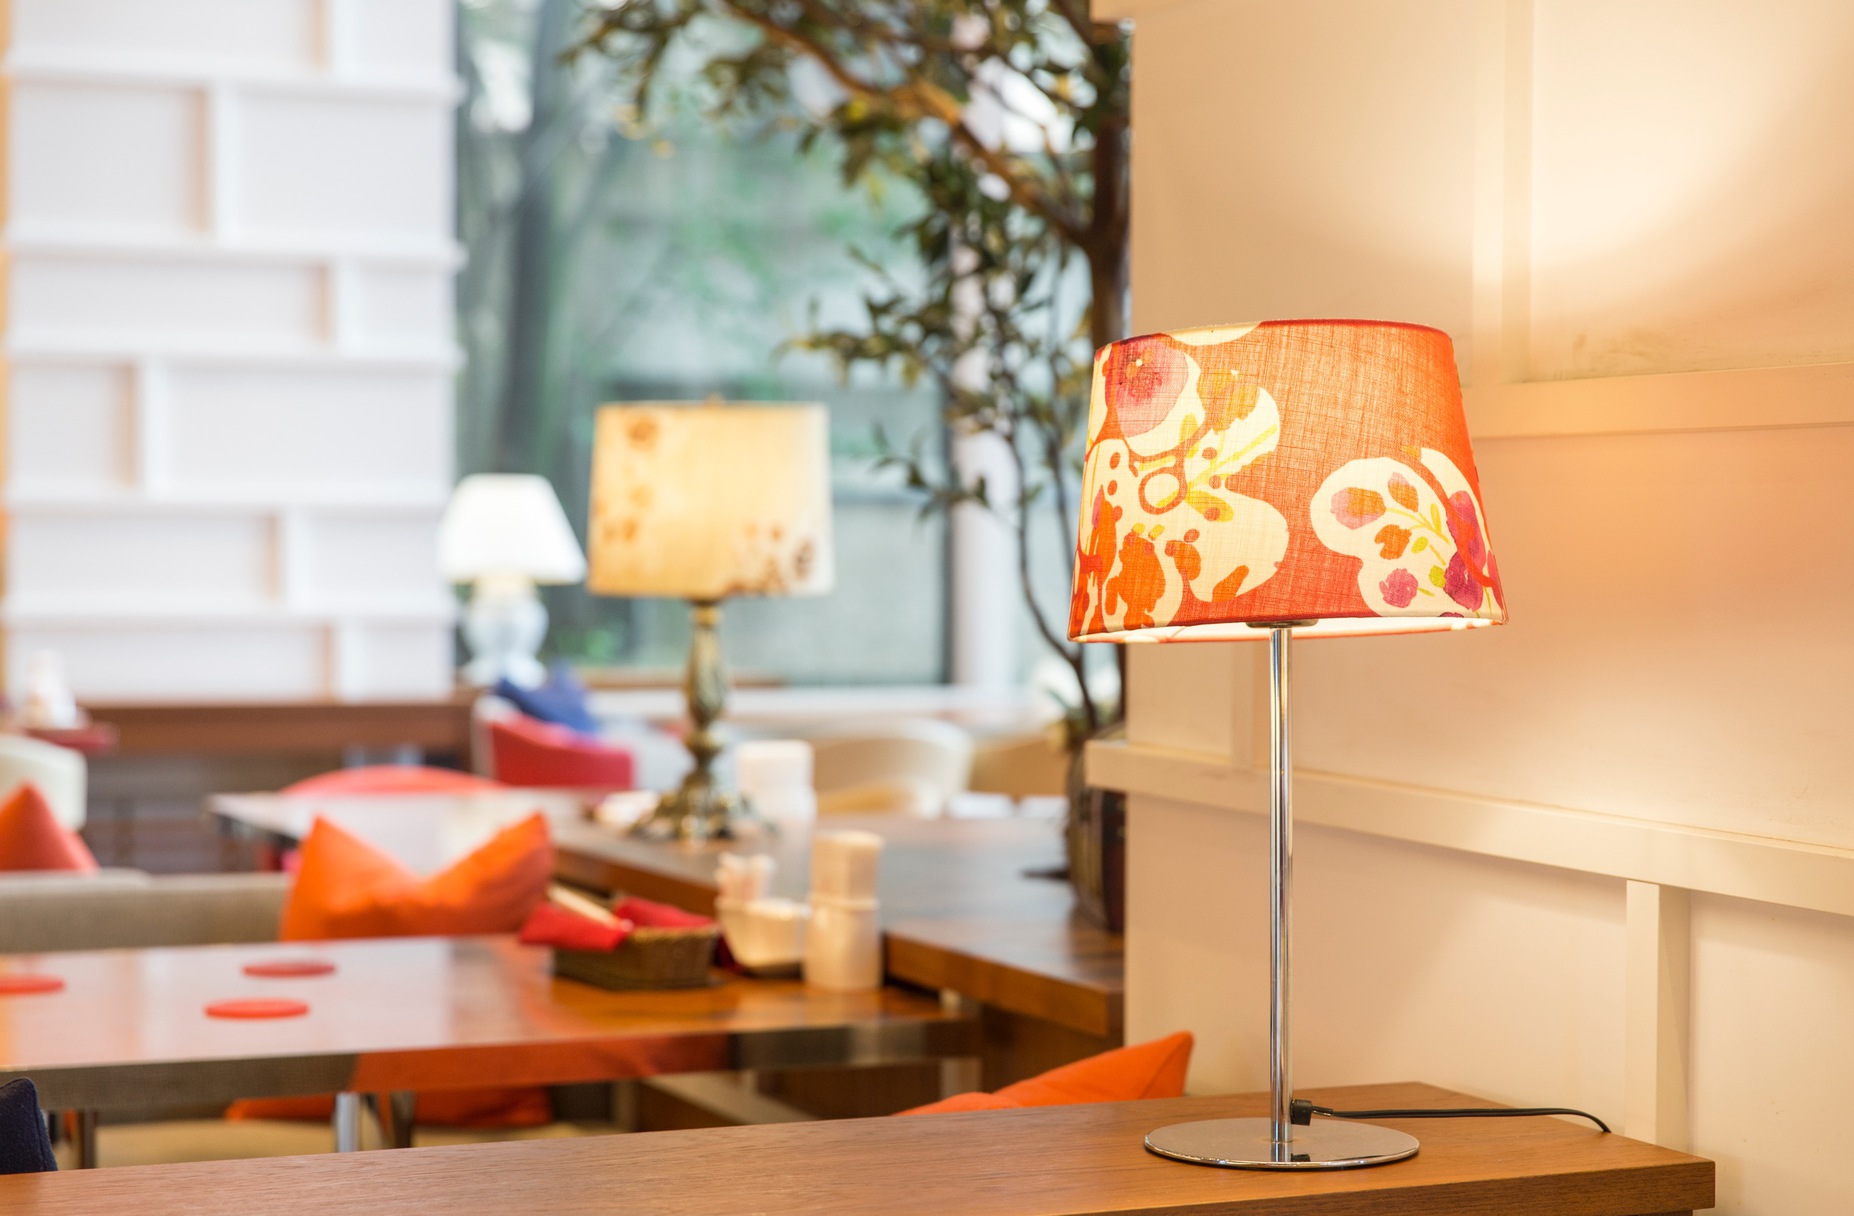 朱色を基調としたランプが印象的な暖かみのある空間。【L'atelier 空 (Kuu)】